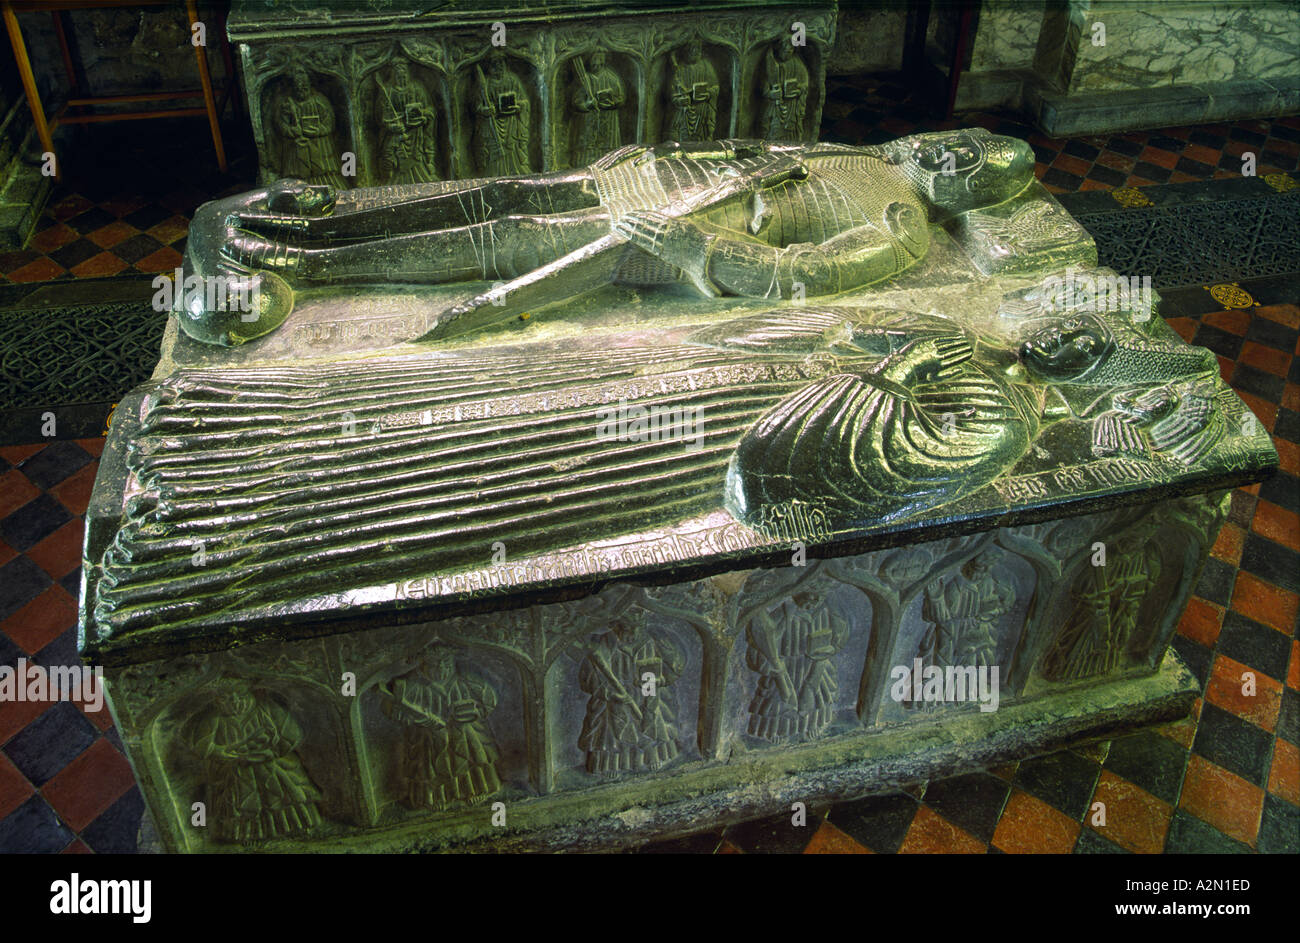 La cité médiévale tombe de Piers et Margaret Butler à l'intérieur de la Cathédrale St Canice, dans la ville de Kilkenny, comté de Kilkenny, Irlande. Banque D'Images